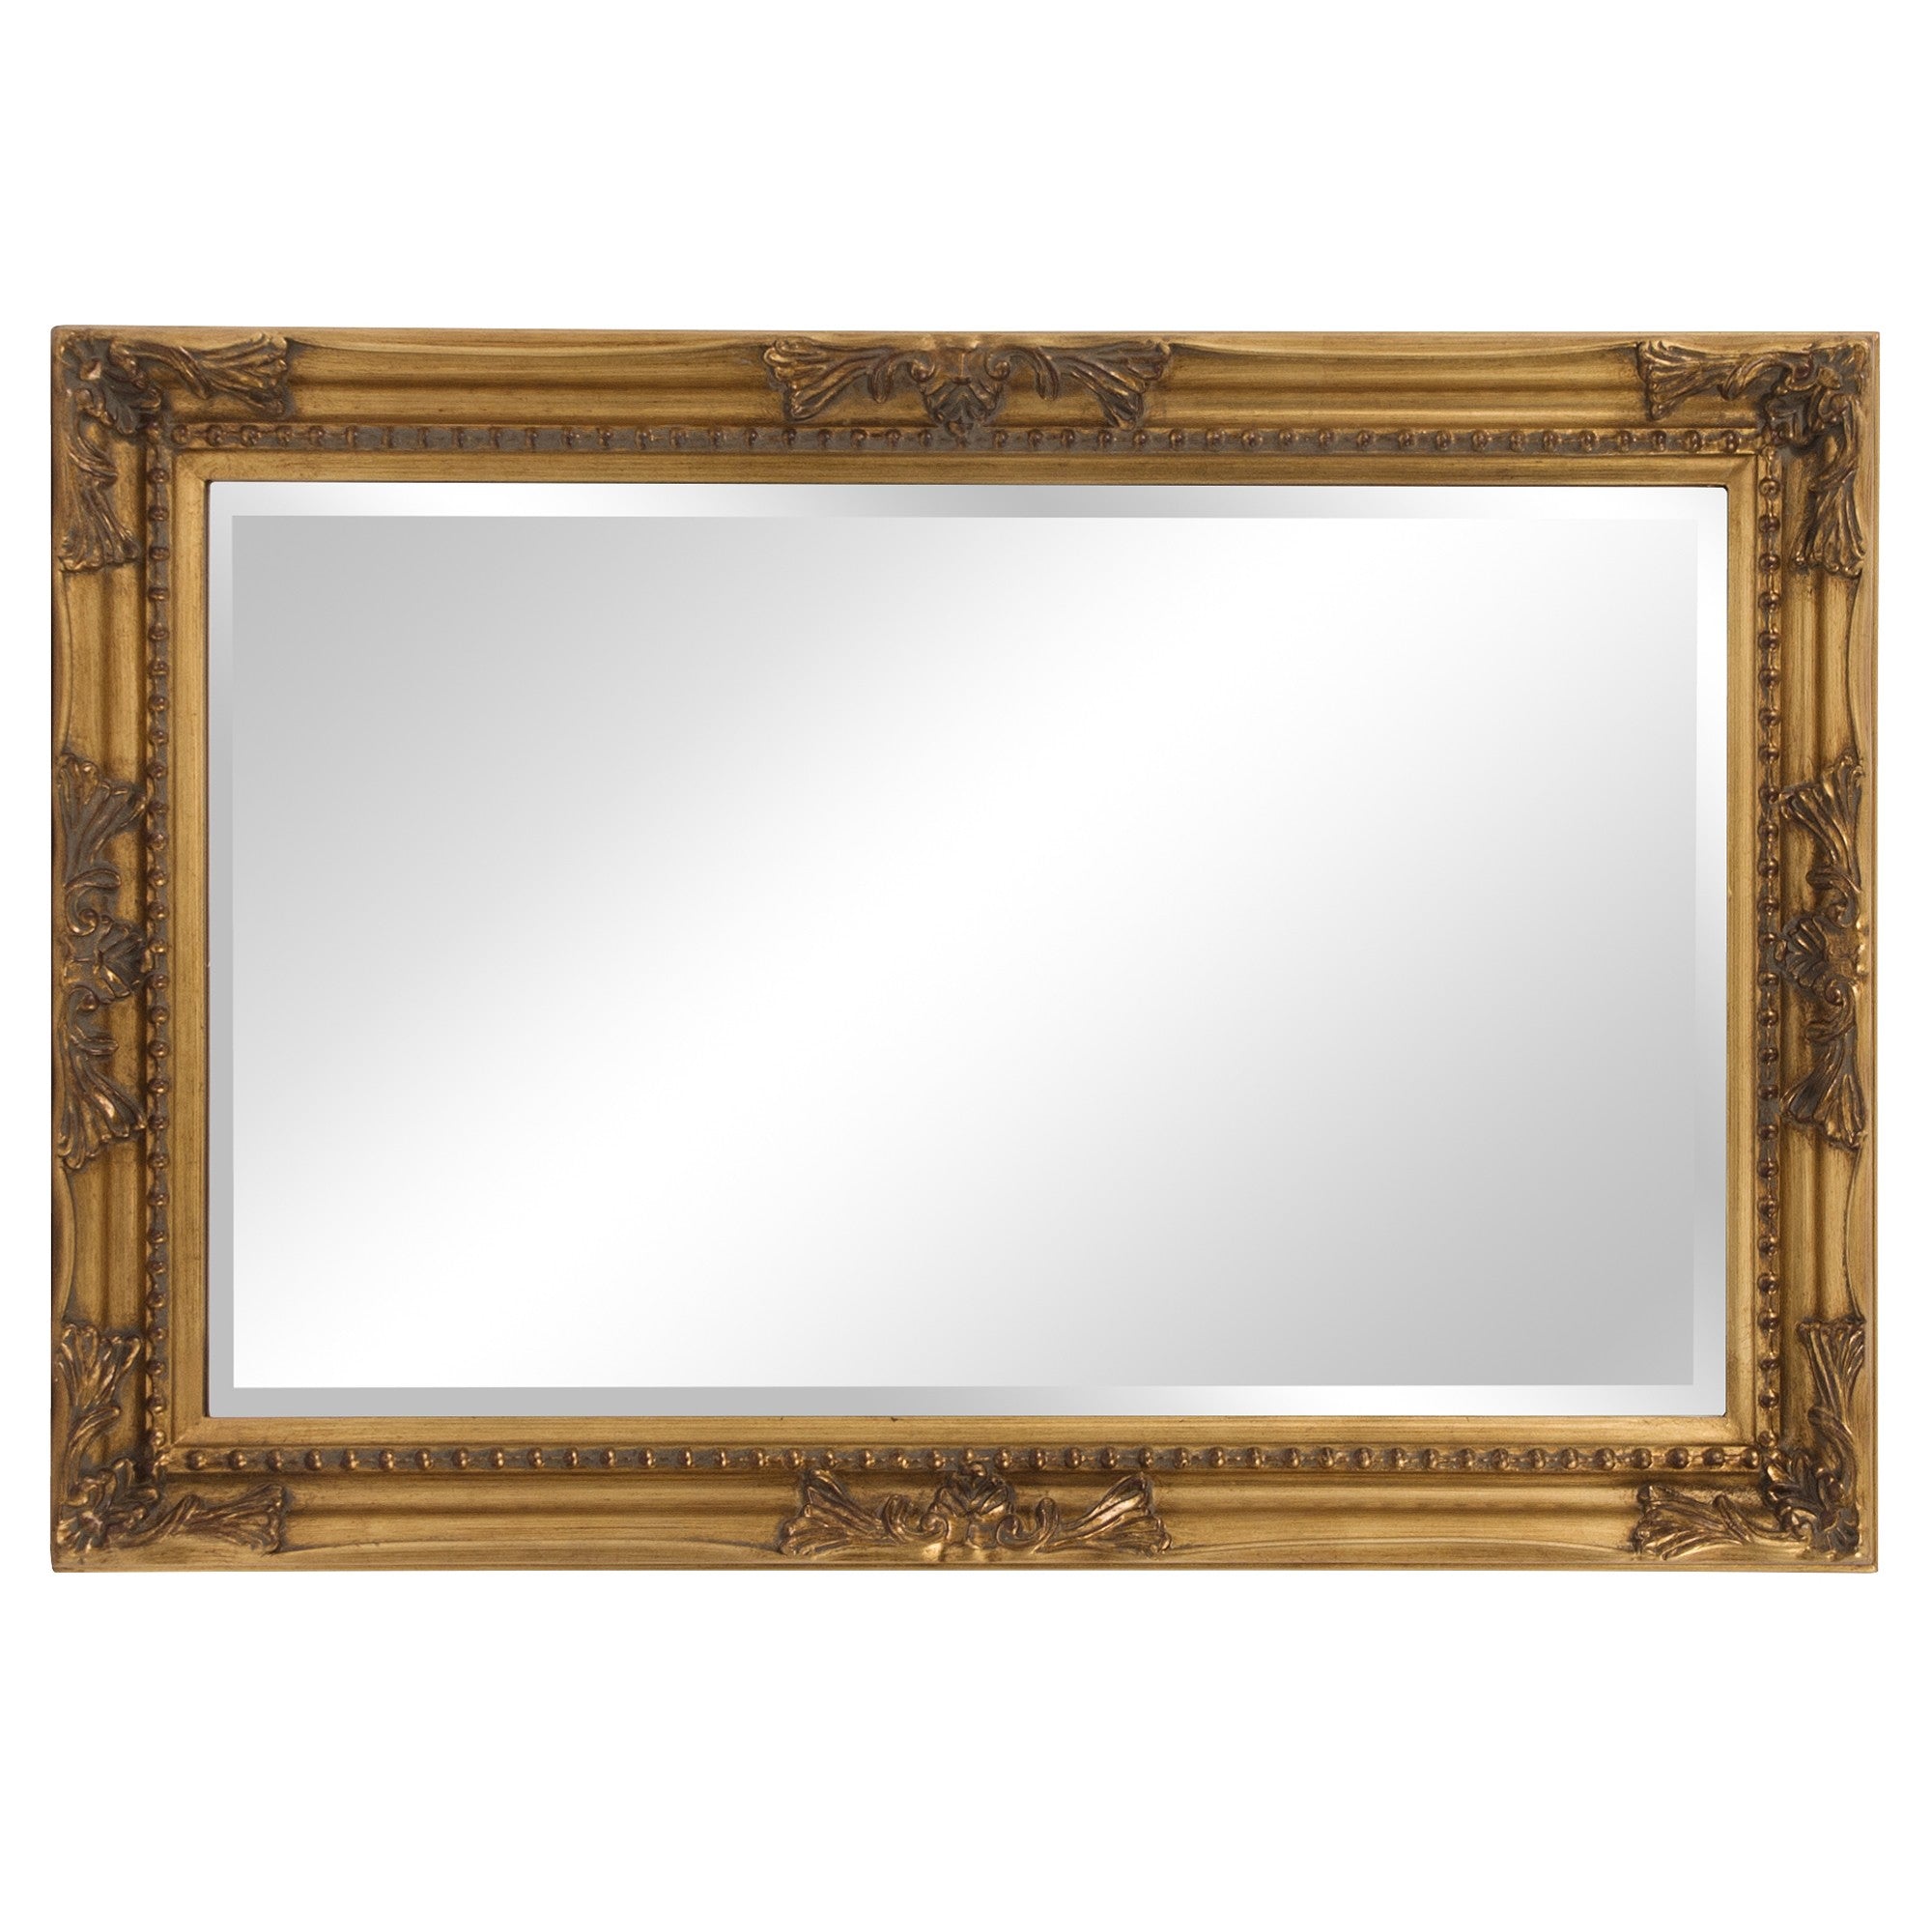 Rectangular Antiqued Gold Wood Frame Mirror